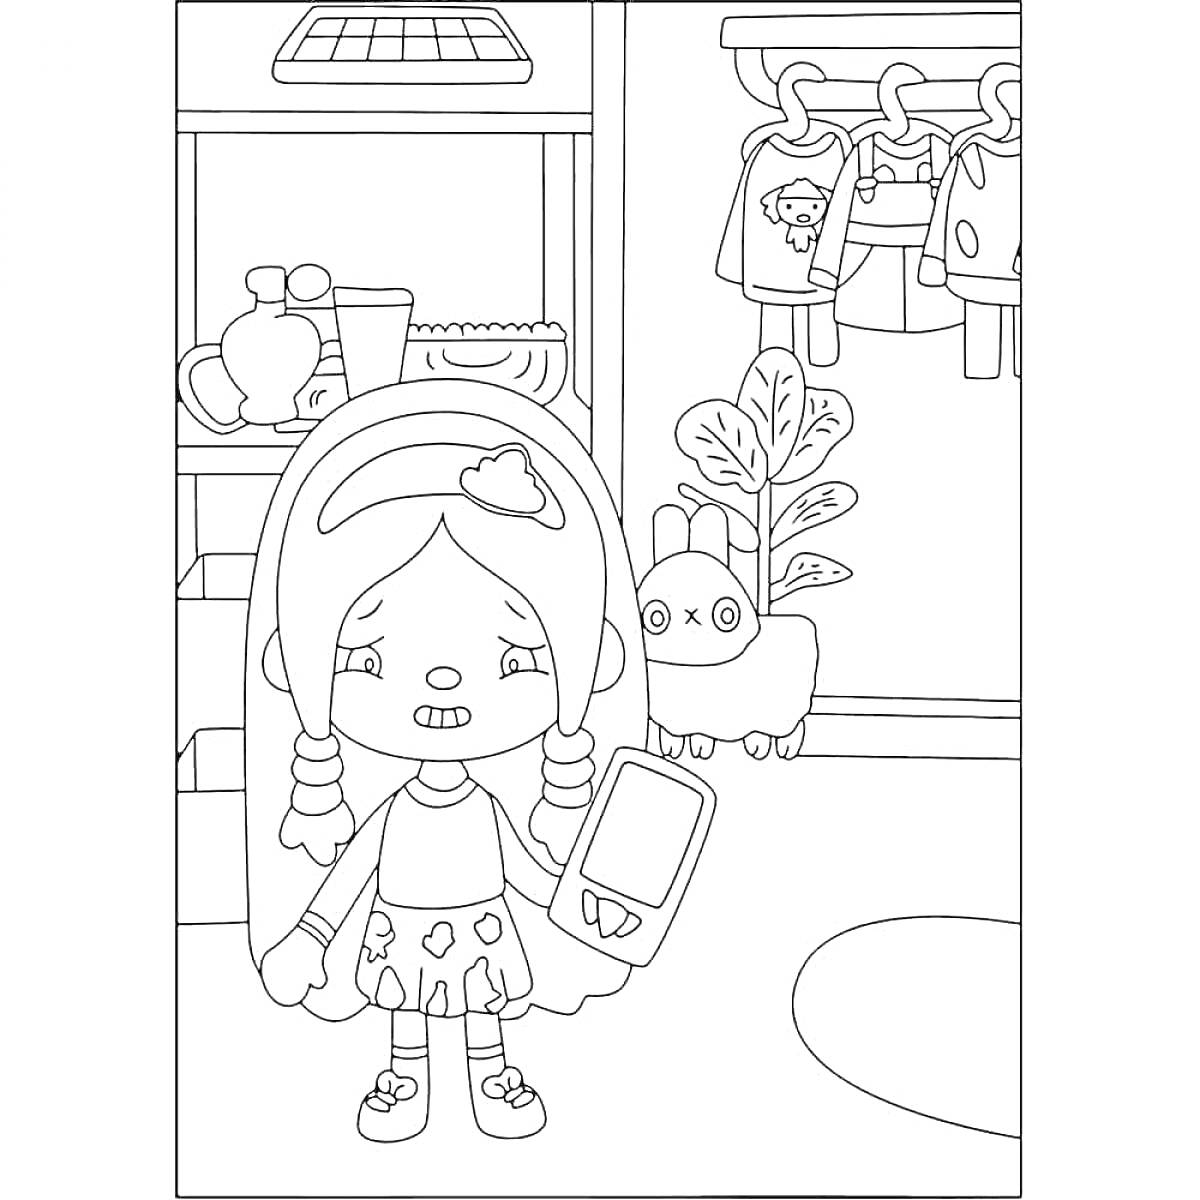 Раскраска Девочка с телефоном в комнате, полка с предметами, вешалка с одеждой, растение и питомец